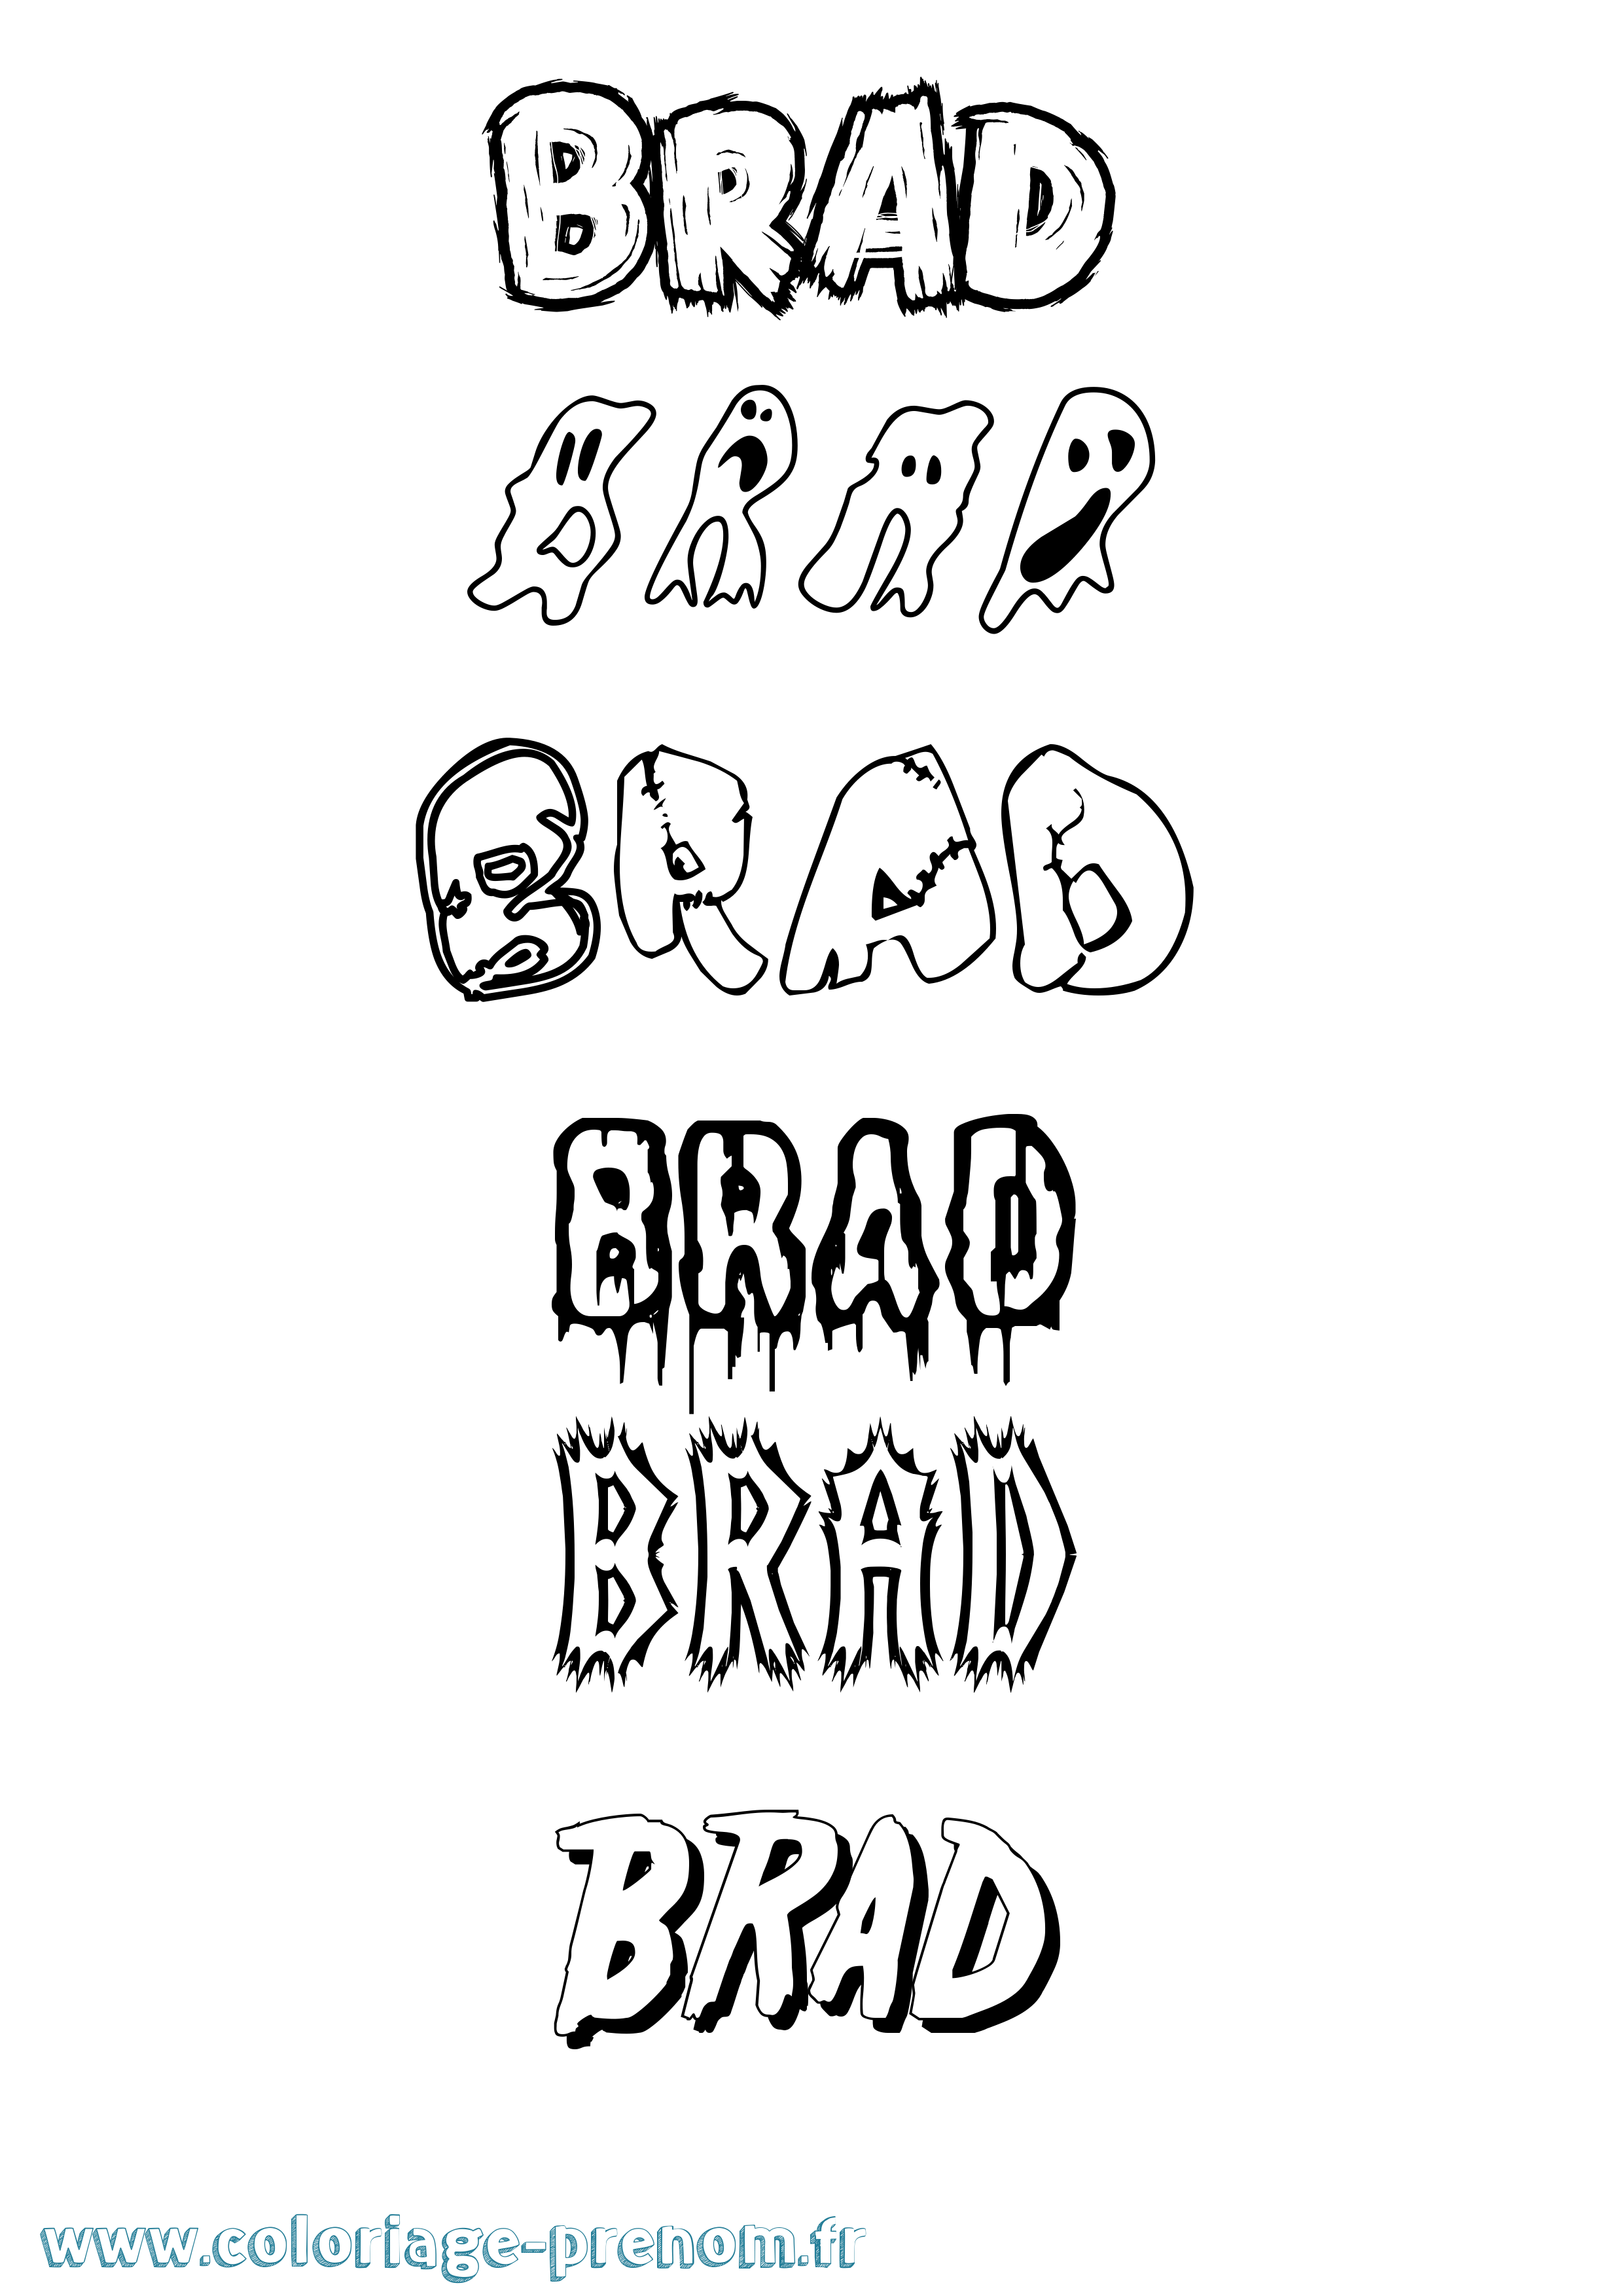 Coloriage prénom Brad Frisson